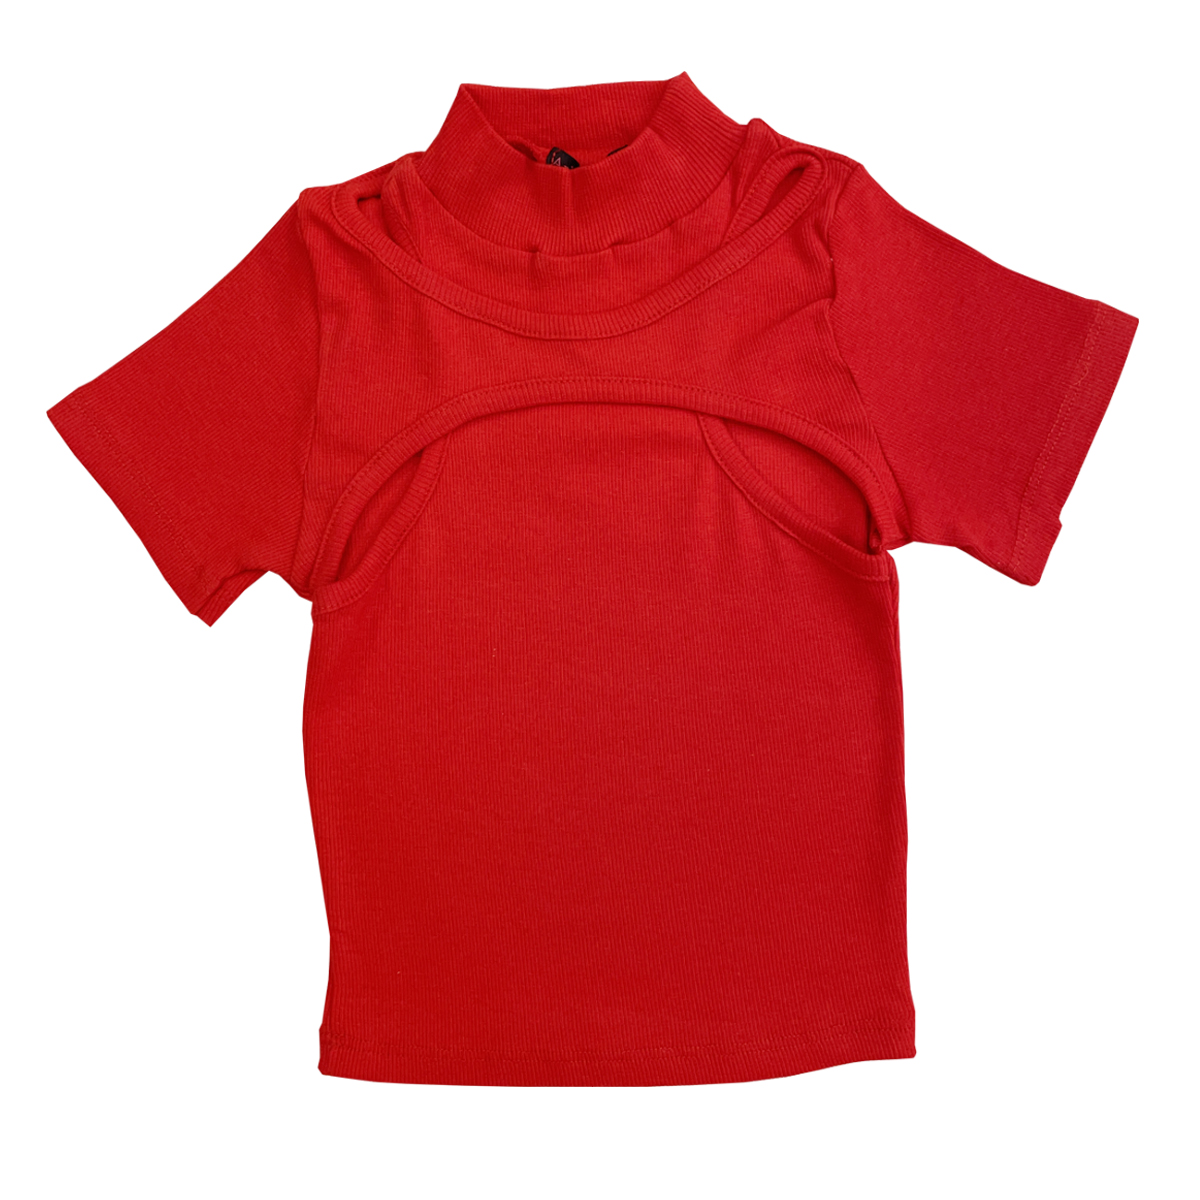 کراپ تاپ آستین کوتاه زنانه مدل کبریتی کد 9-30 رنگ قرمز